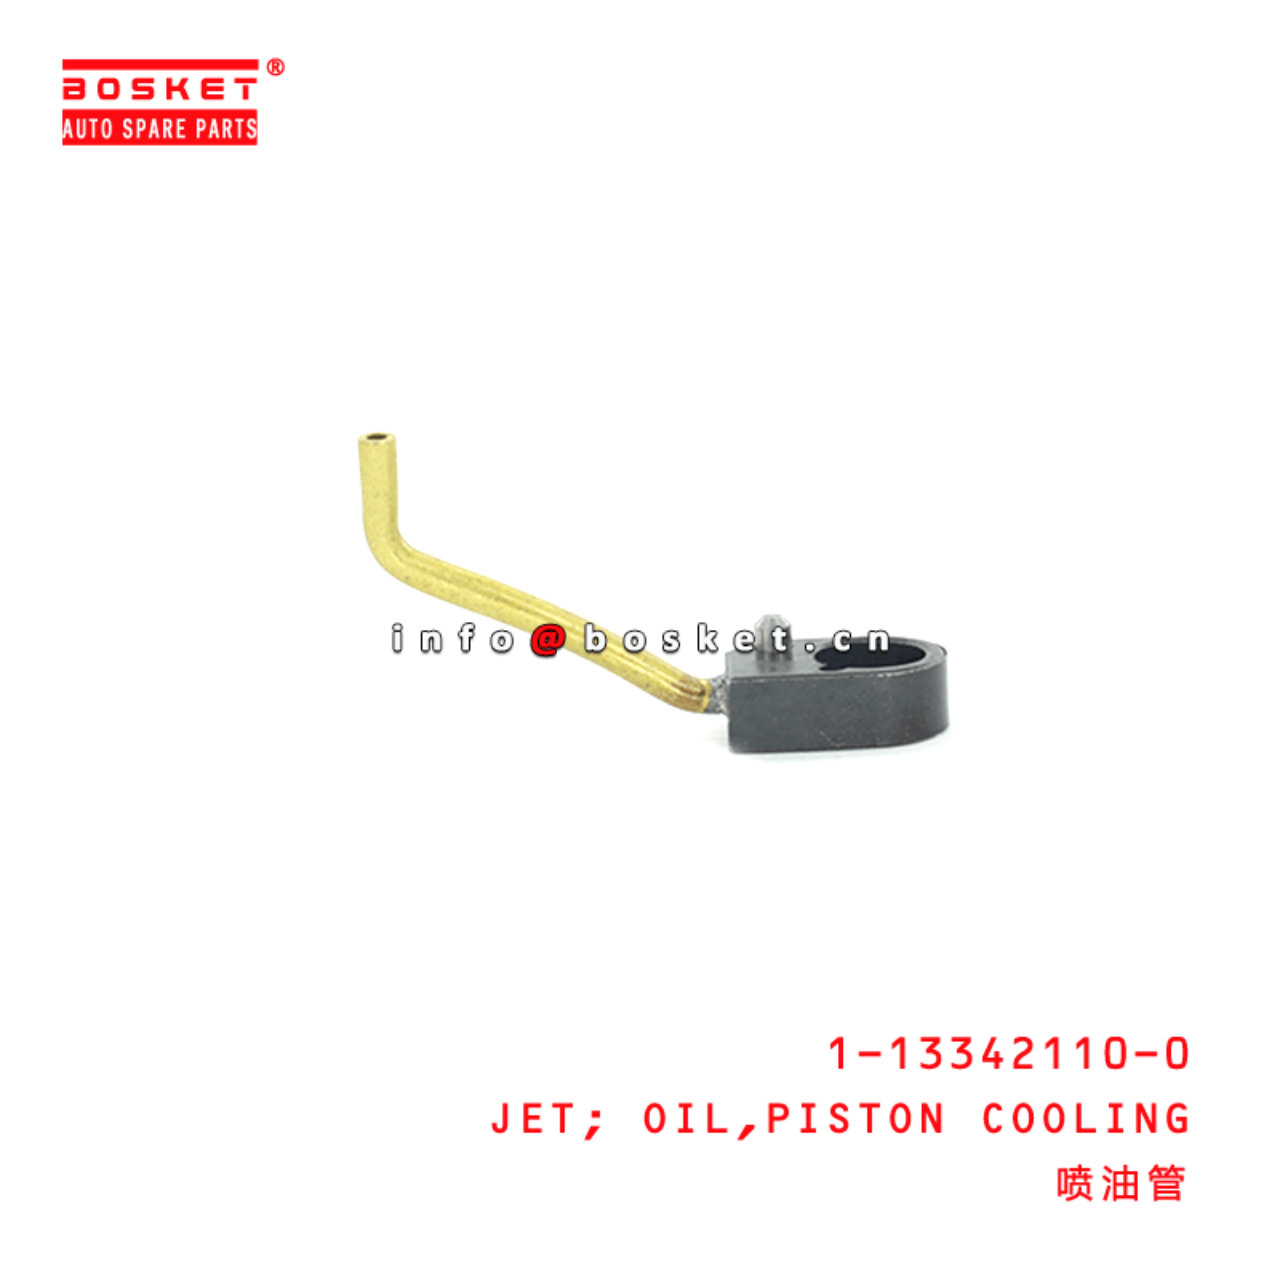 1-13342110-0 Piston Cooling Oil Jet 1133421100 Suitable for ISUZU FSR12 6BG1